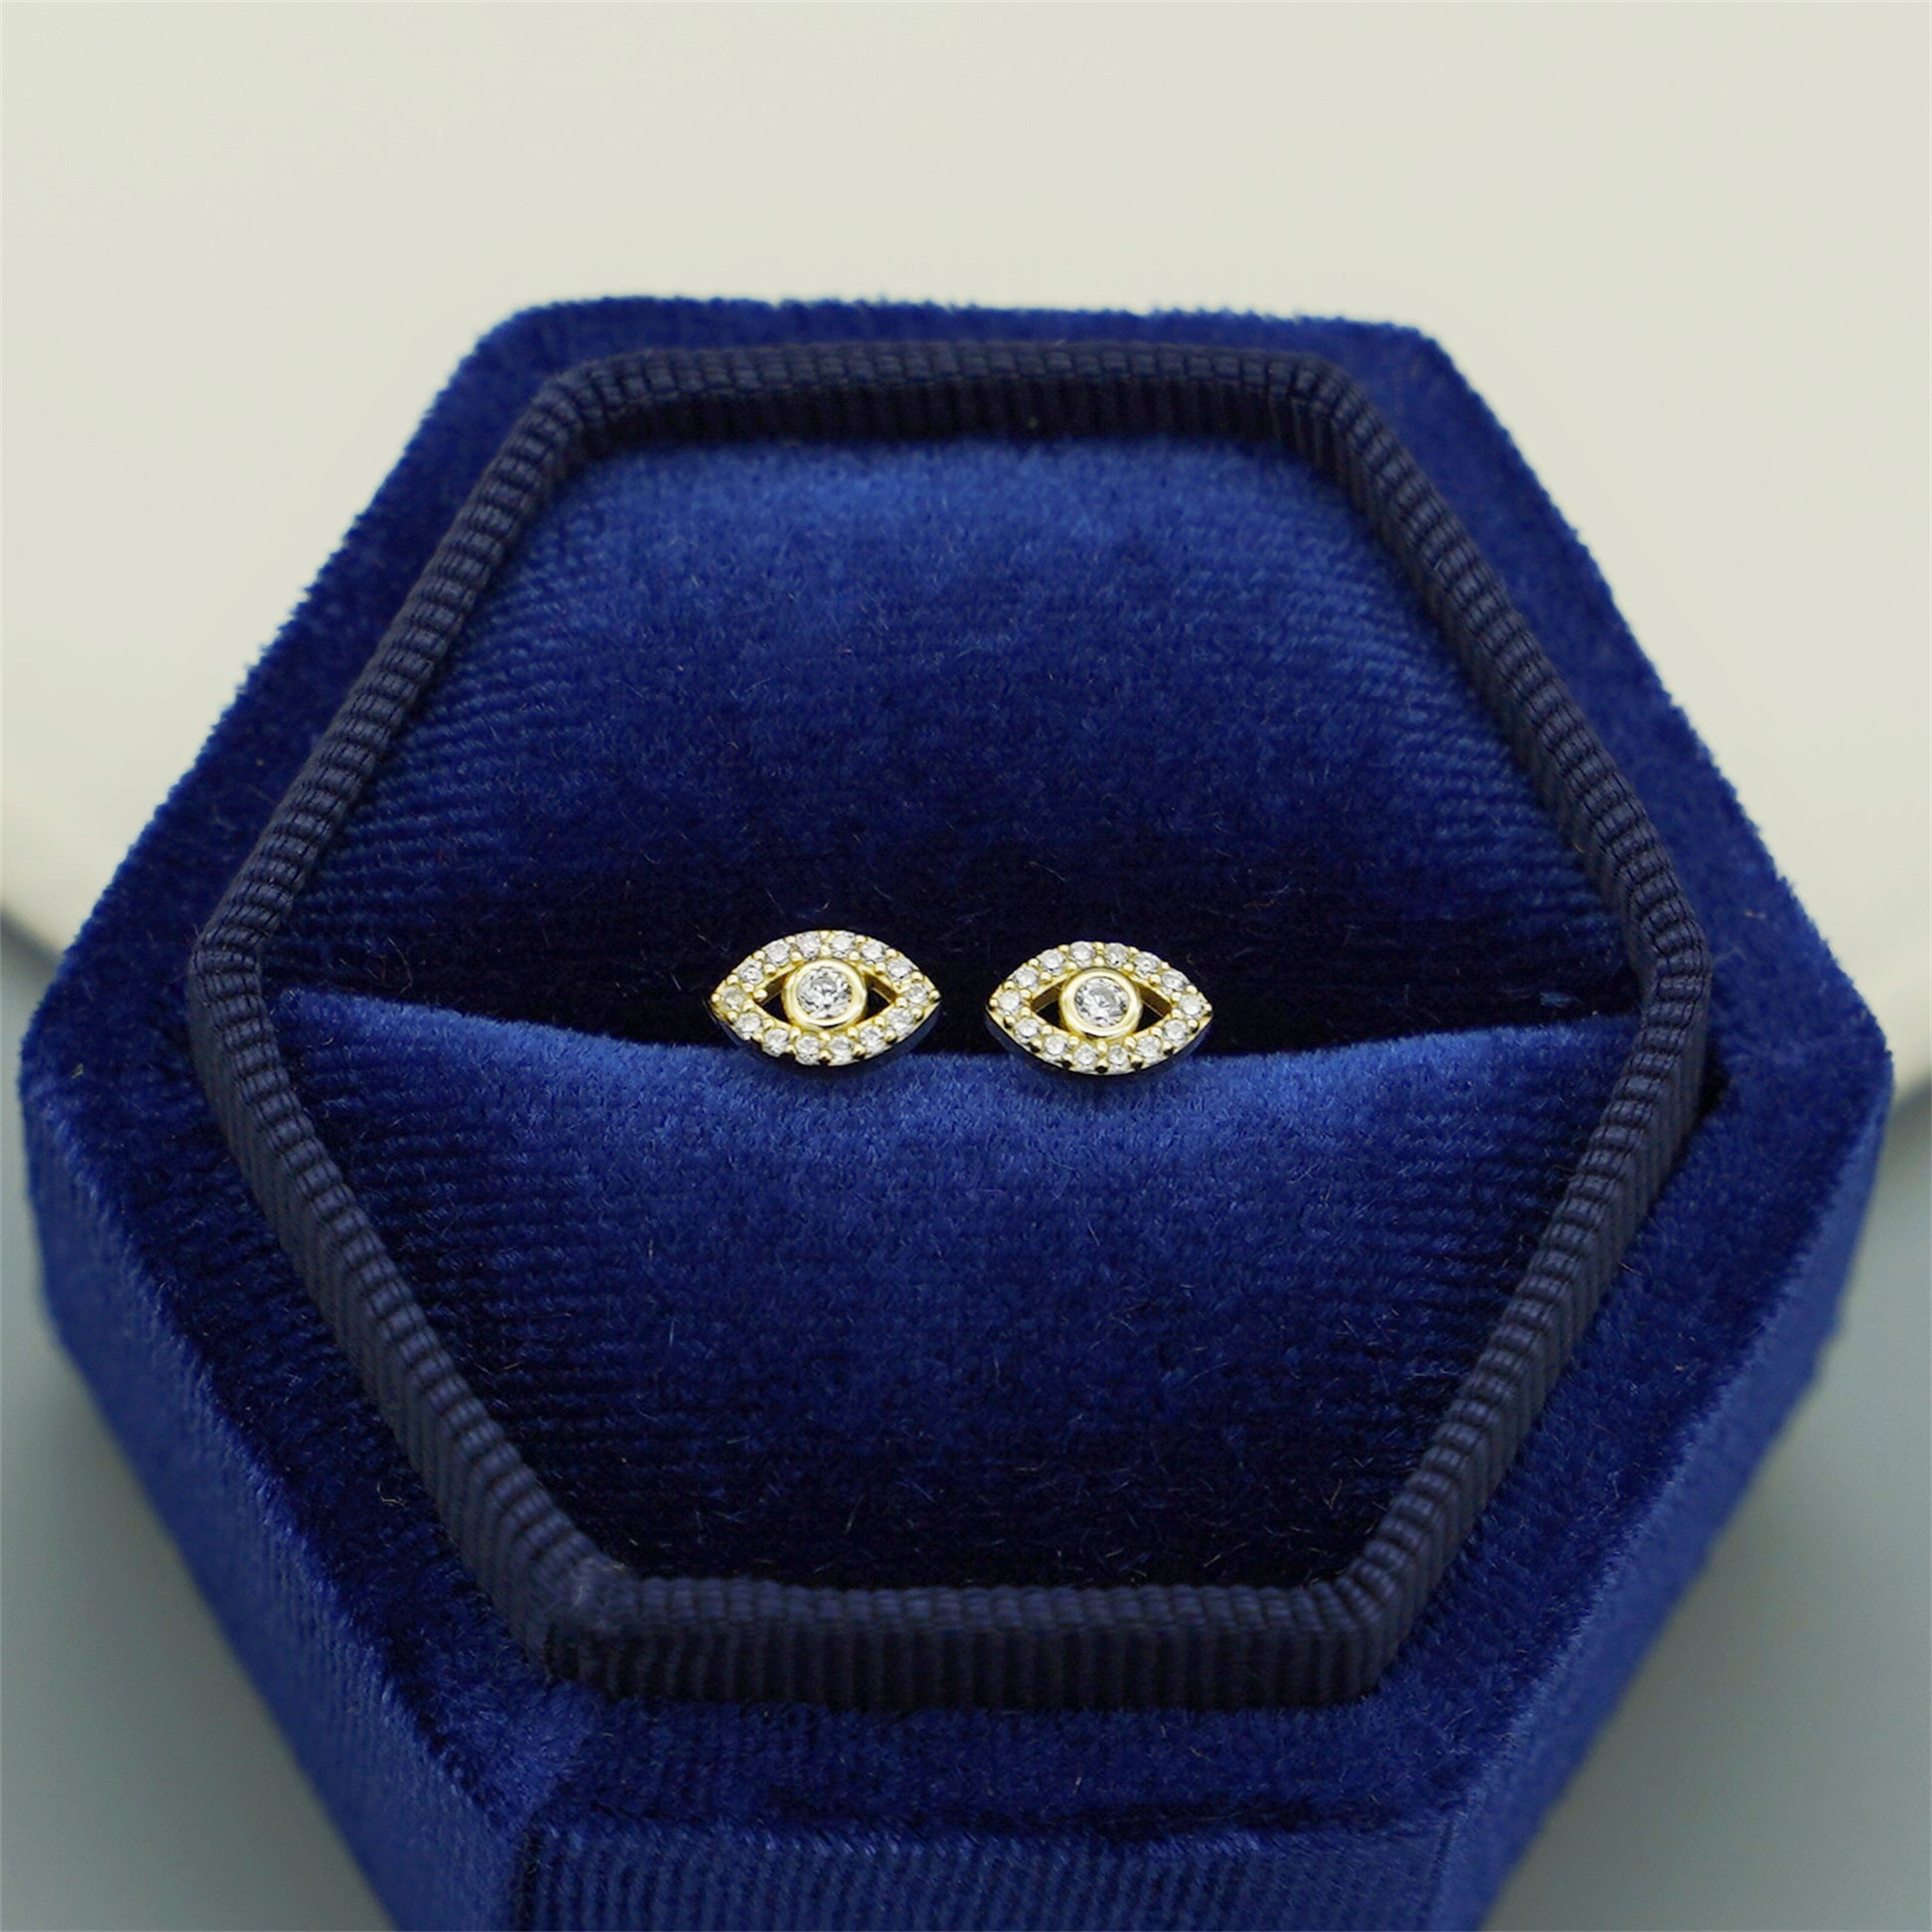 14K Gold Evil Eye Clear Crystal CZ Stud Earrings with 925 Sterling Silver Butterfly Backs - sugarkittenlondon